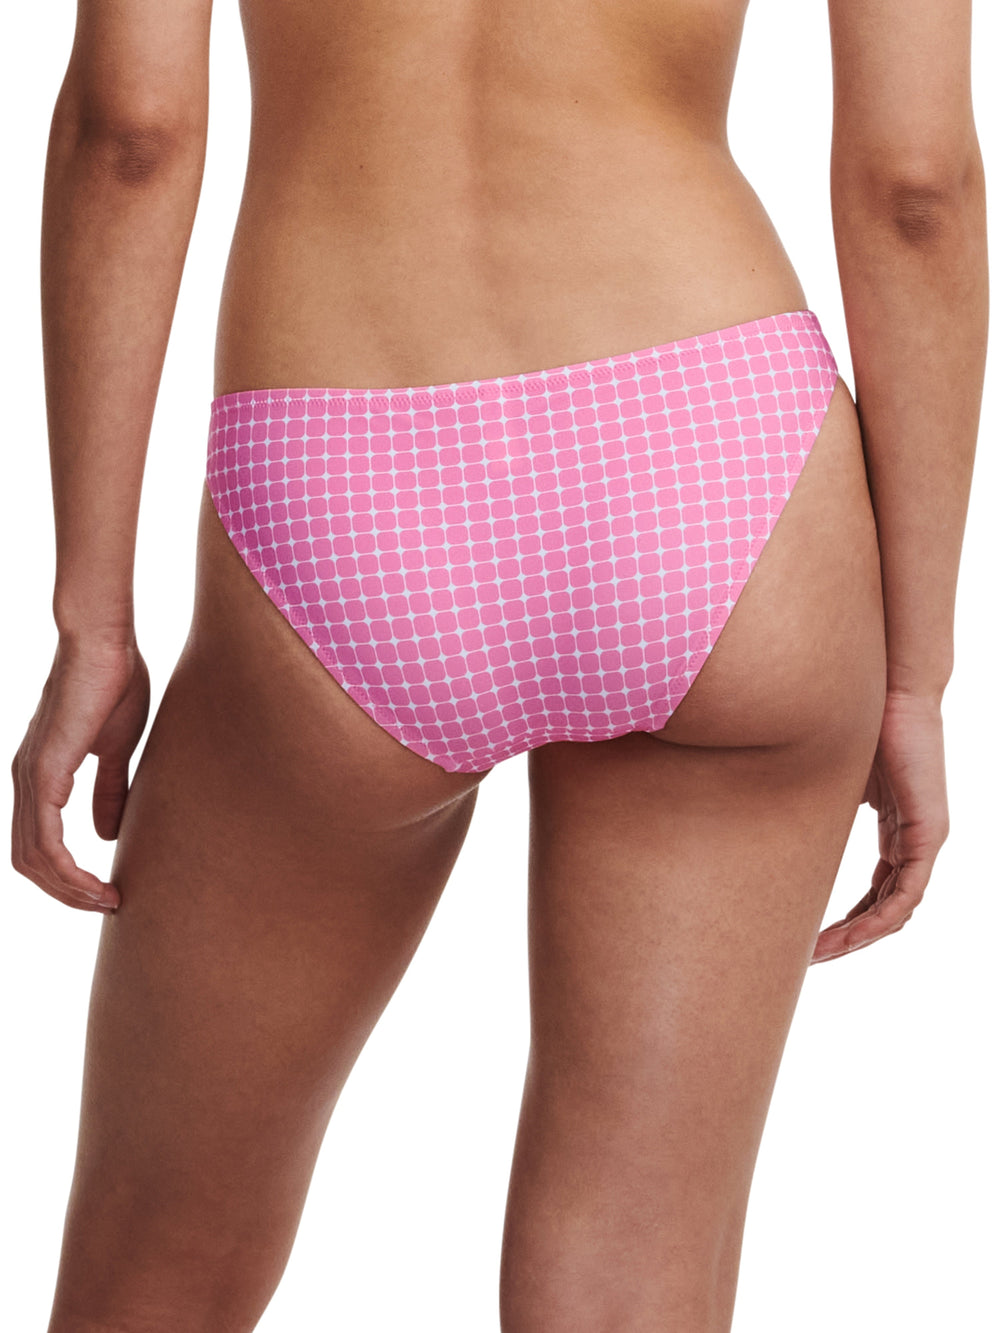 Passionata Swimwear Jaia Bikini Brief - Pink Dots Bikini Brief Passionata 